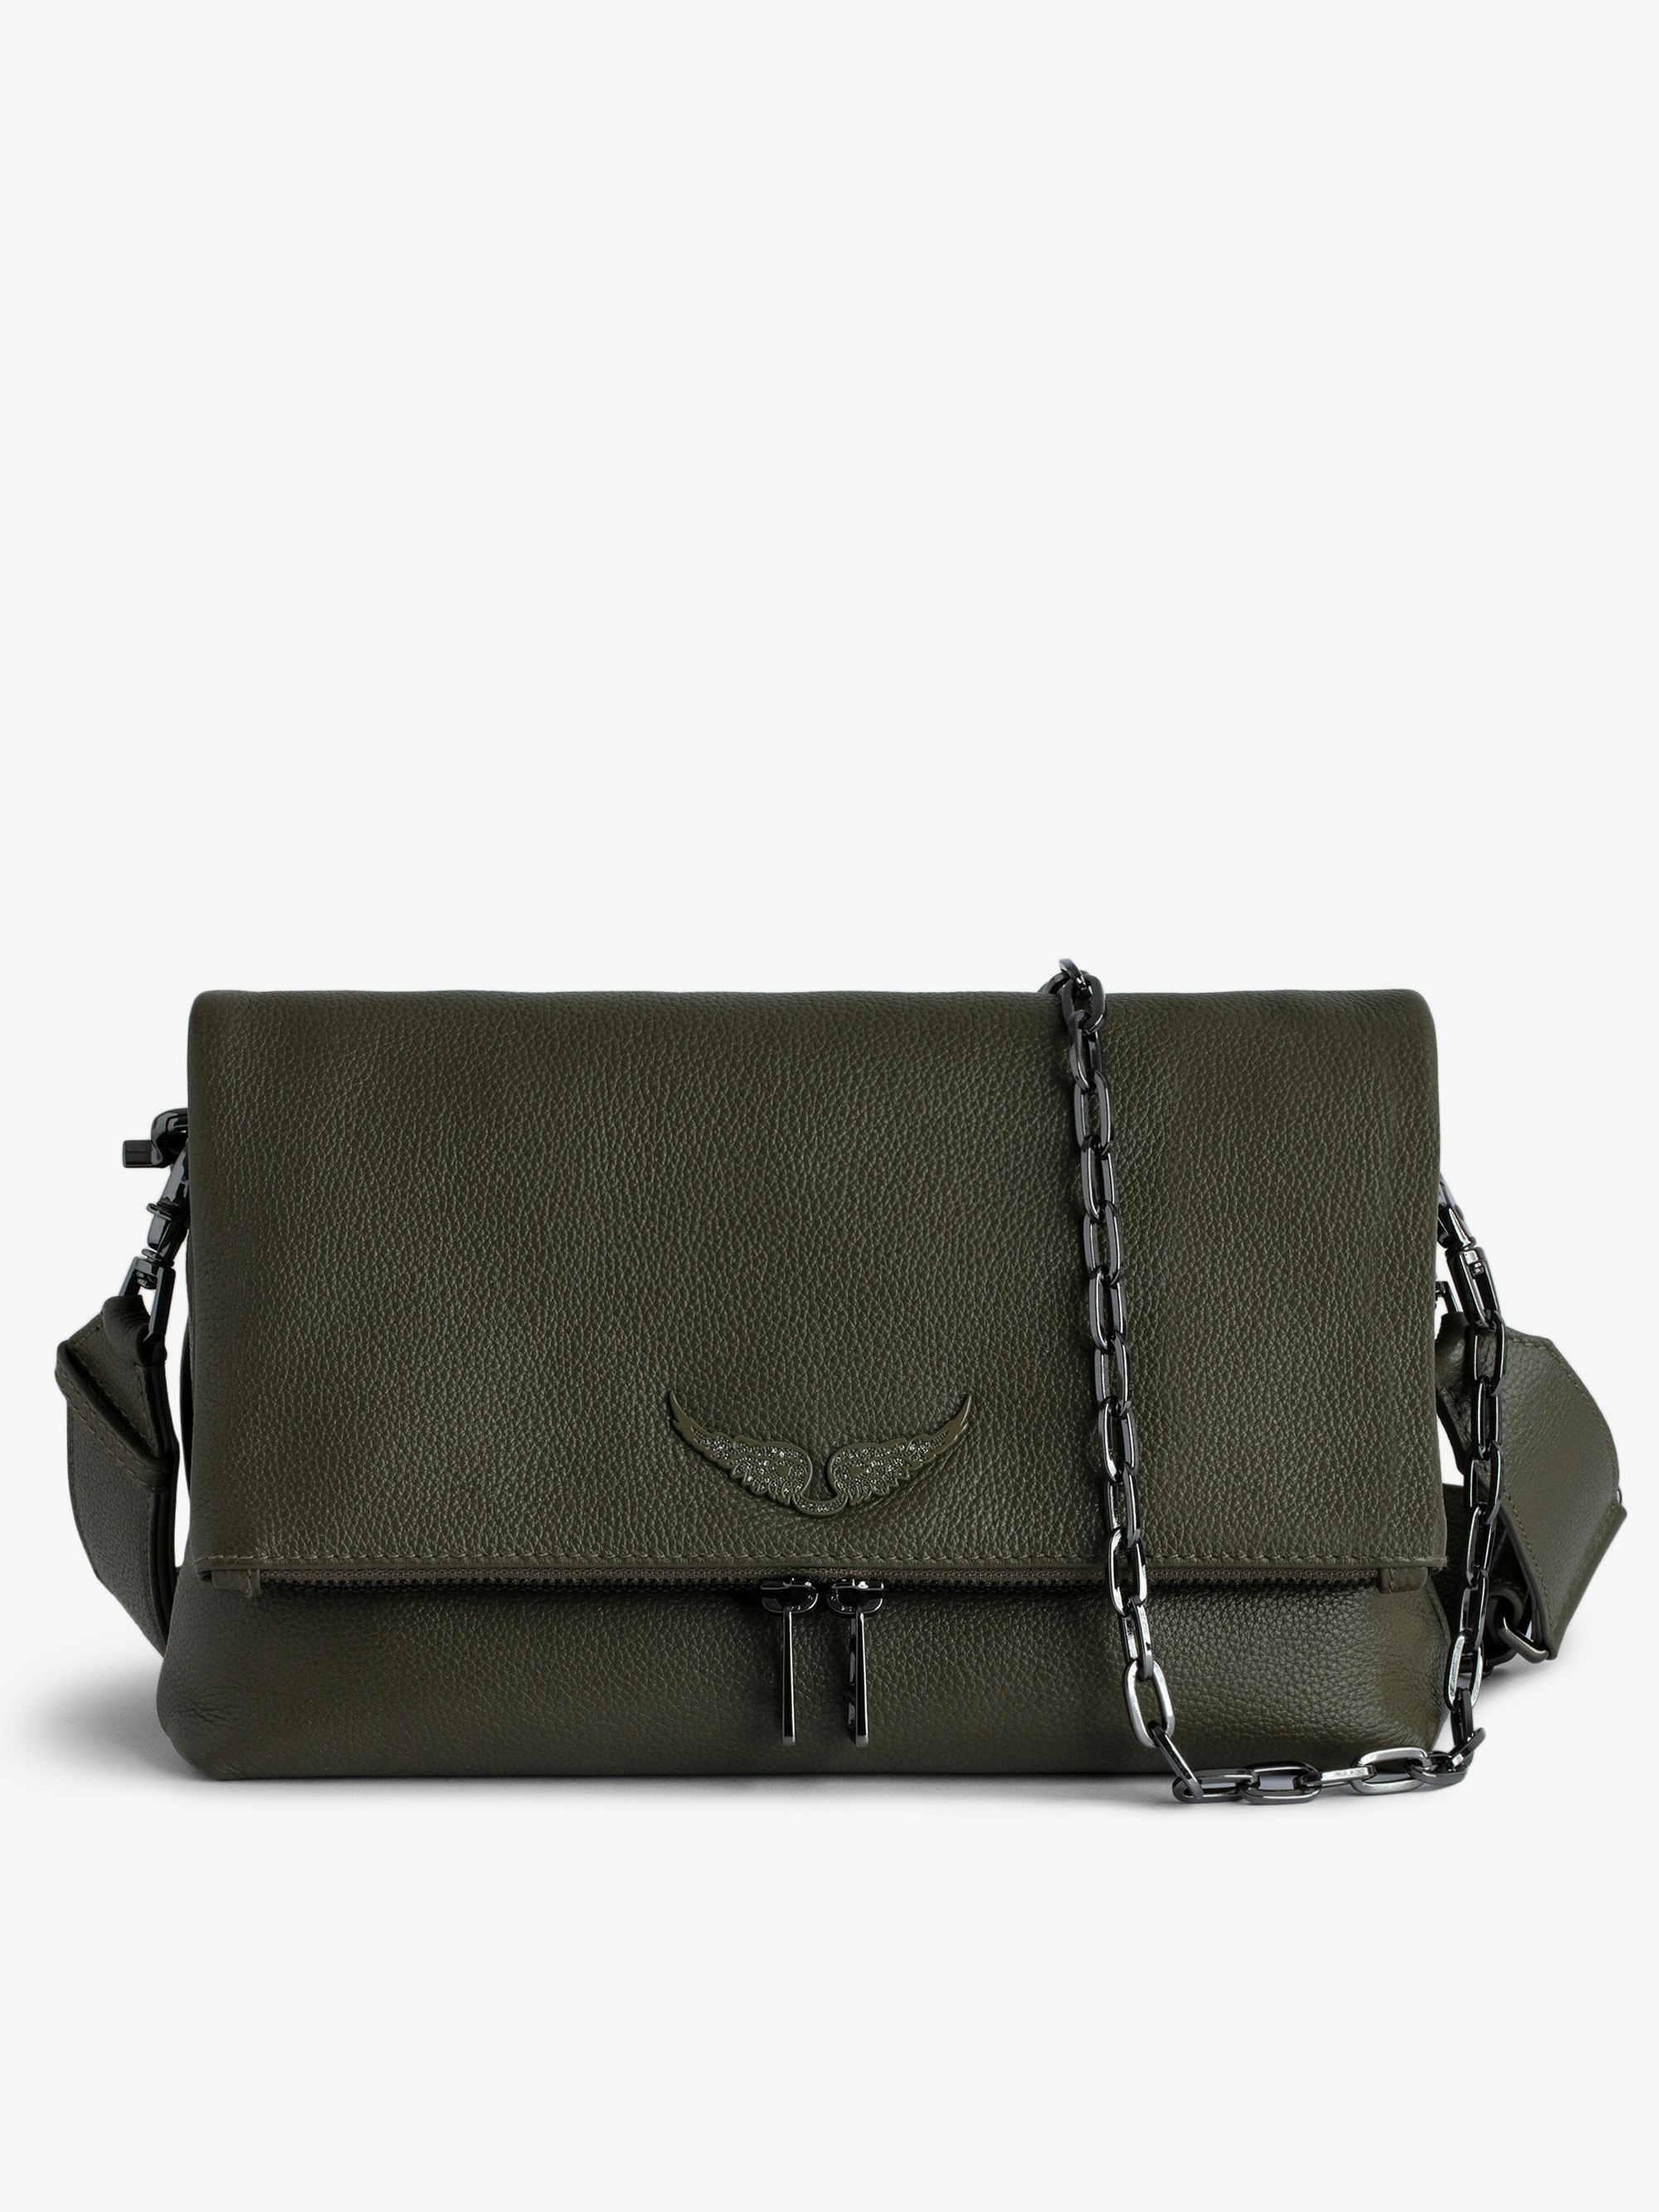 Tasche Rocky - Khakifarbene Handtasche aus genarbtem Leder mit Schulterriemen und charakteristischen Flügeln.